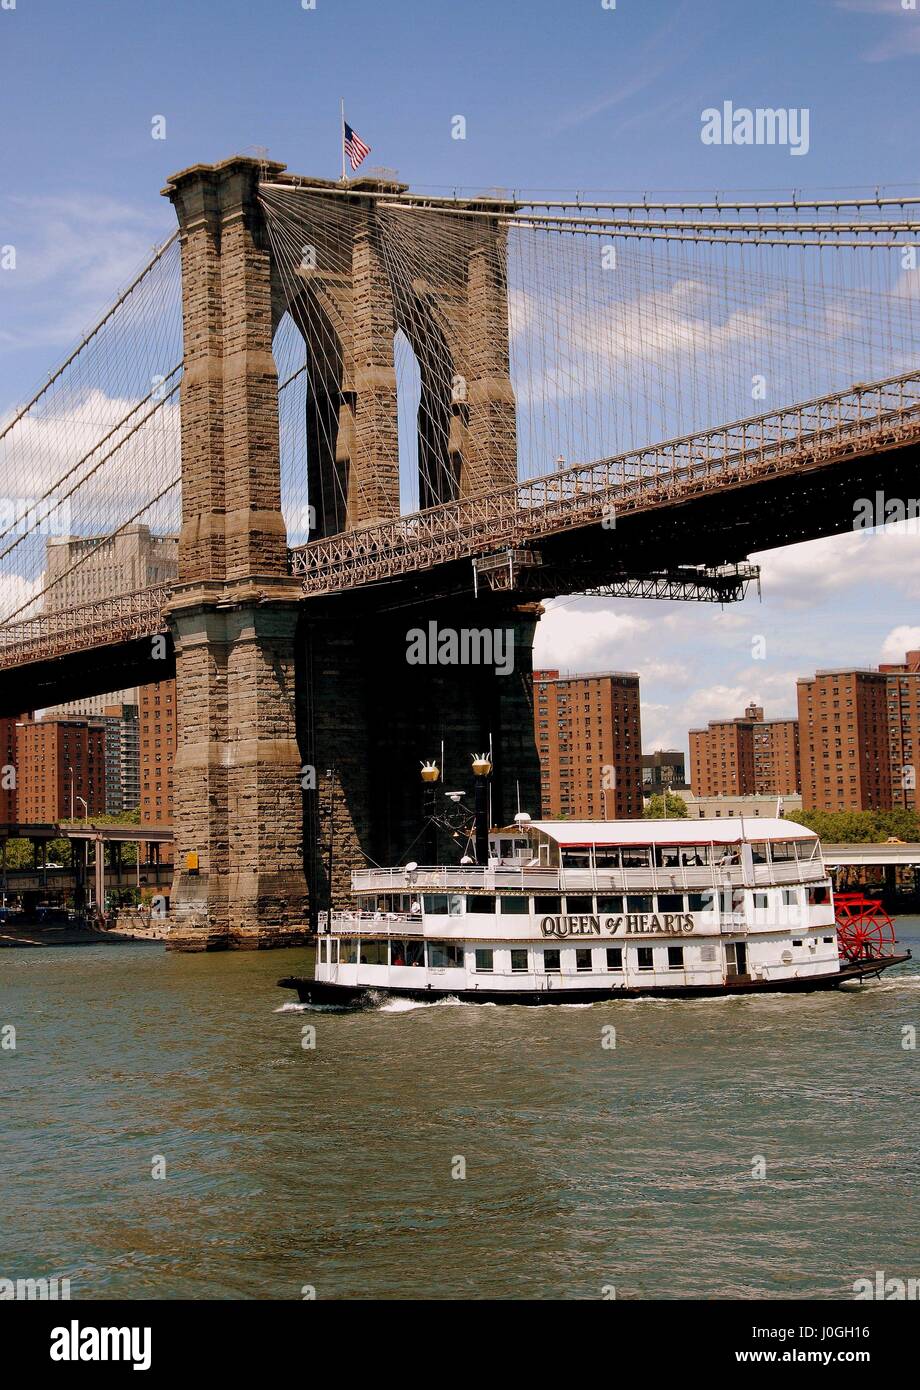 New York - 19 juillet 2009 : Pont de Brooklyn tour ouest et Reine de Coeur randonnée voile sur l'East River Banque D'Images